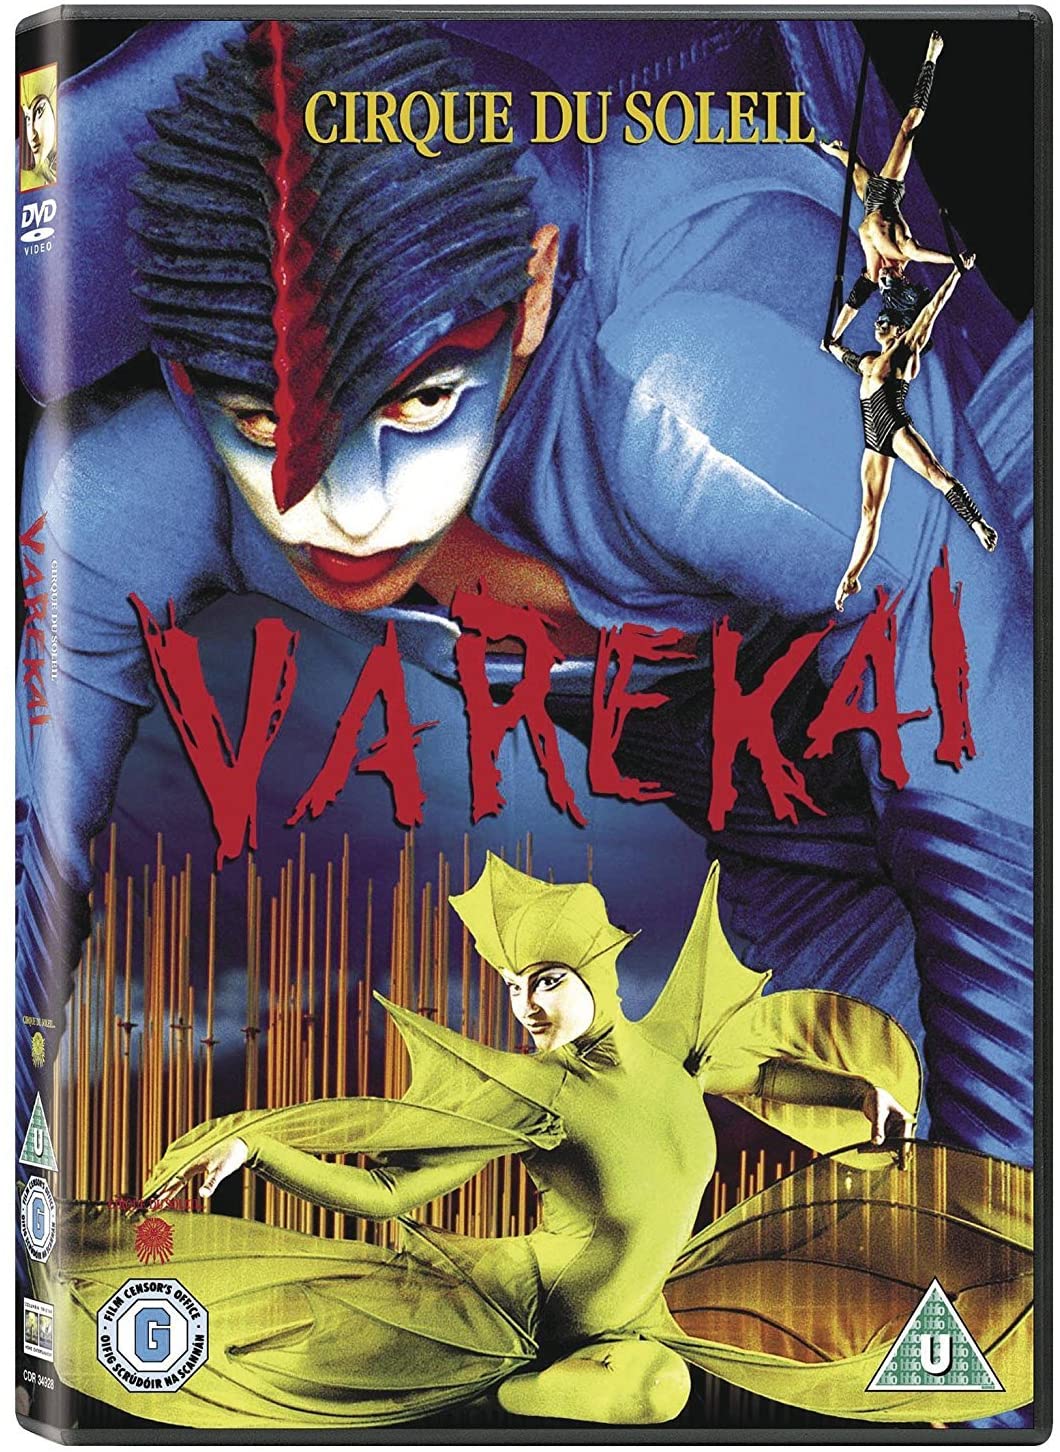 Stiahni si Filmy DVD Cirque du Soleil: Varekai (2003)(FR) = CSFD 89%